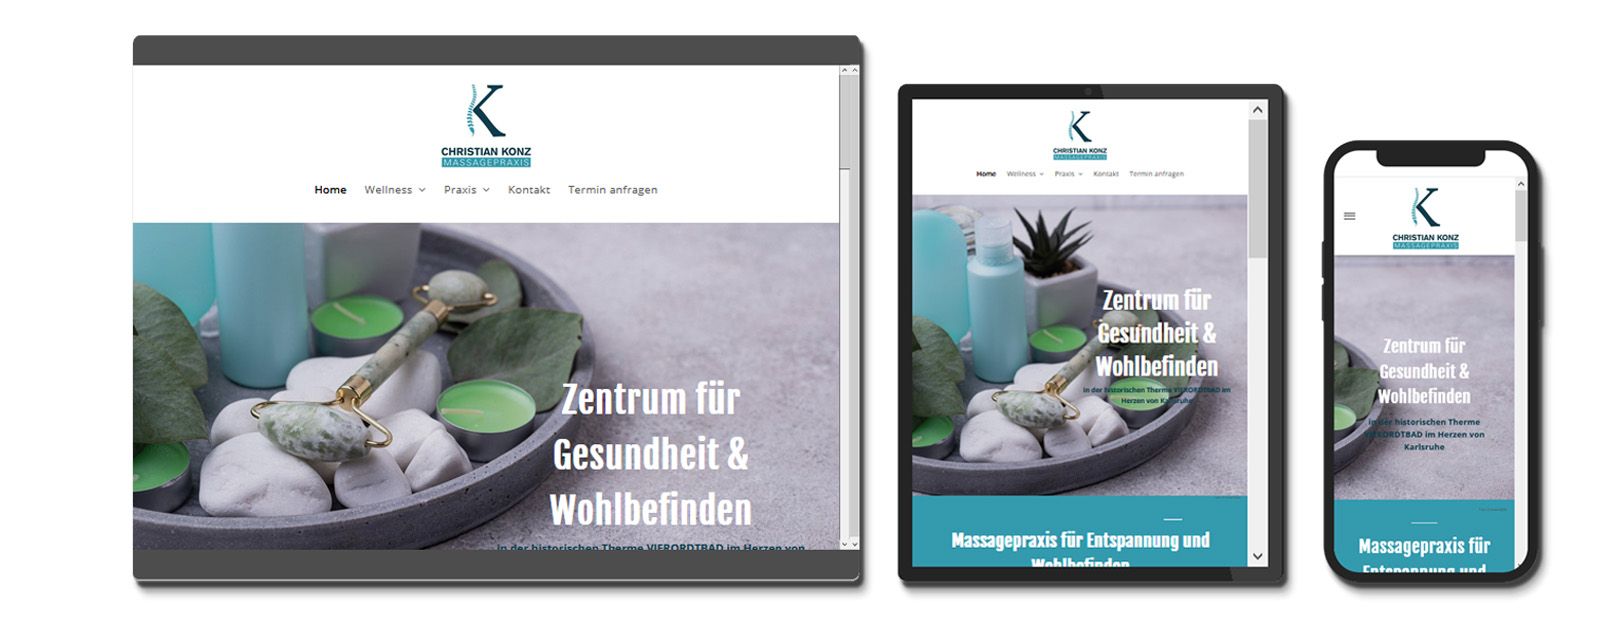 Homepage für Wellness in Karlsruhe erstellt